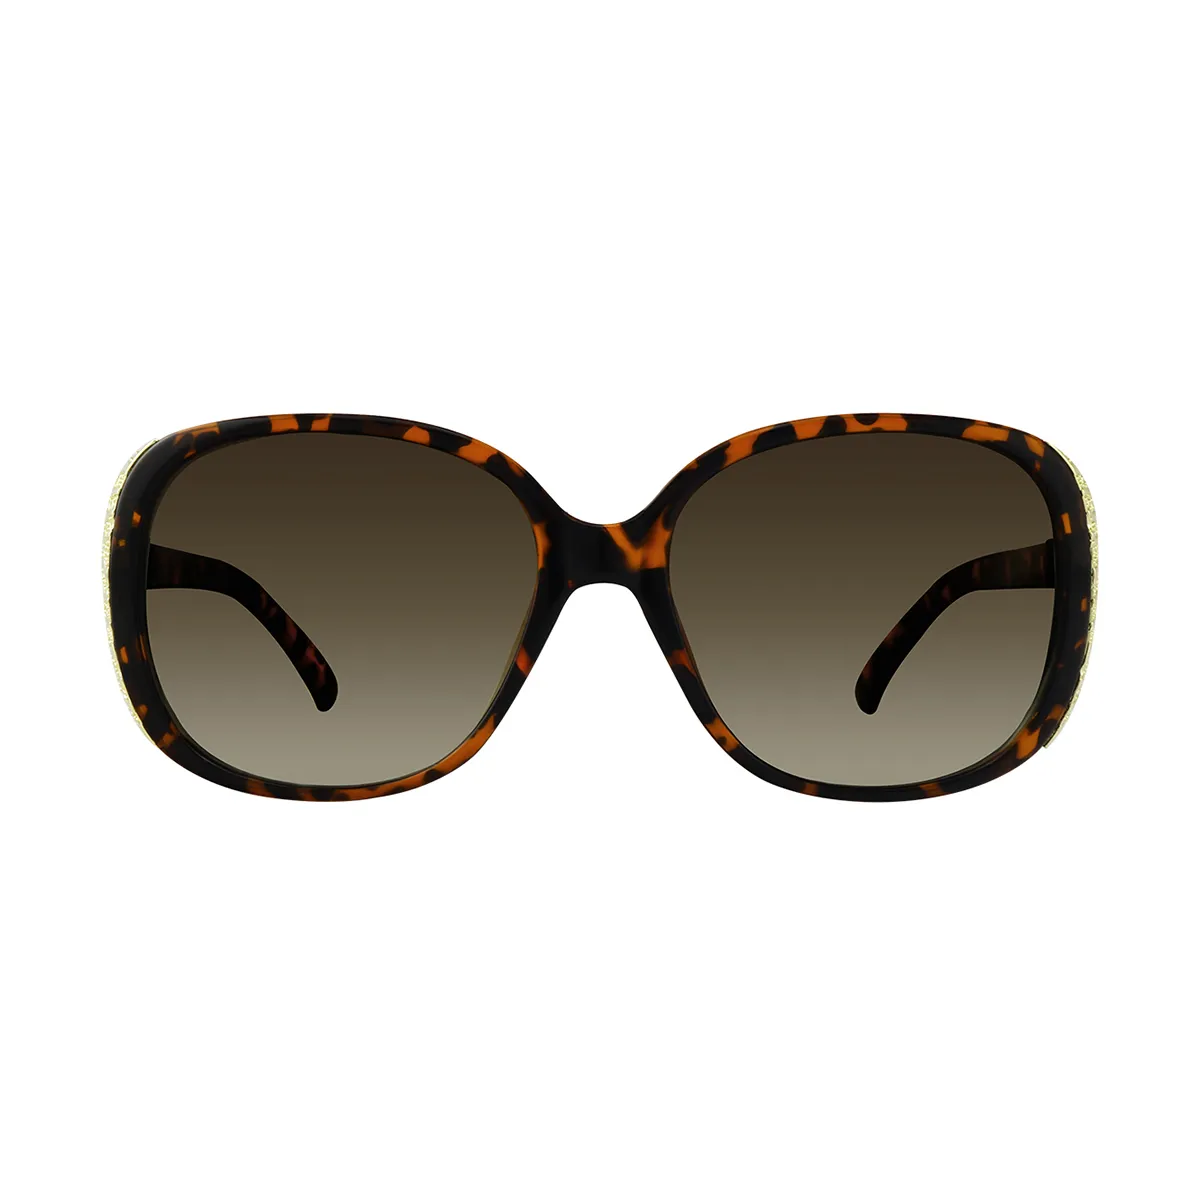 Yvette - Oval Tortoiseshell Sunglasses for Women